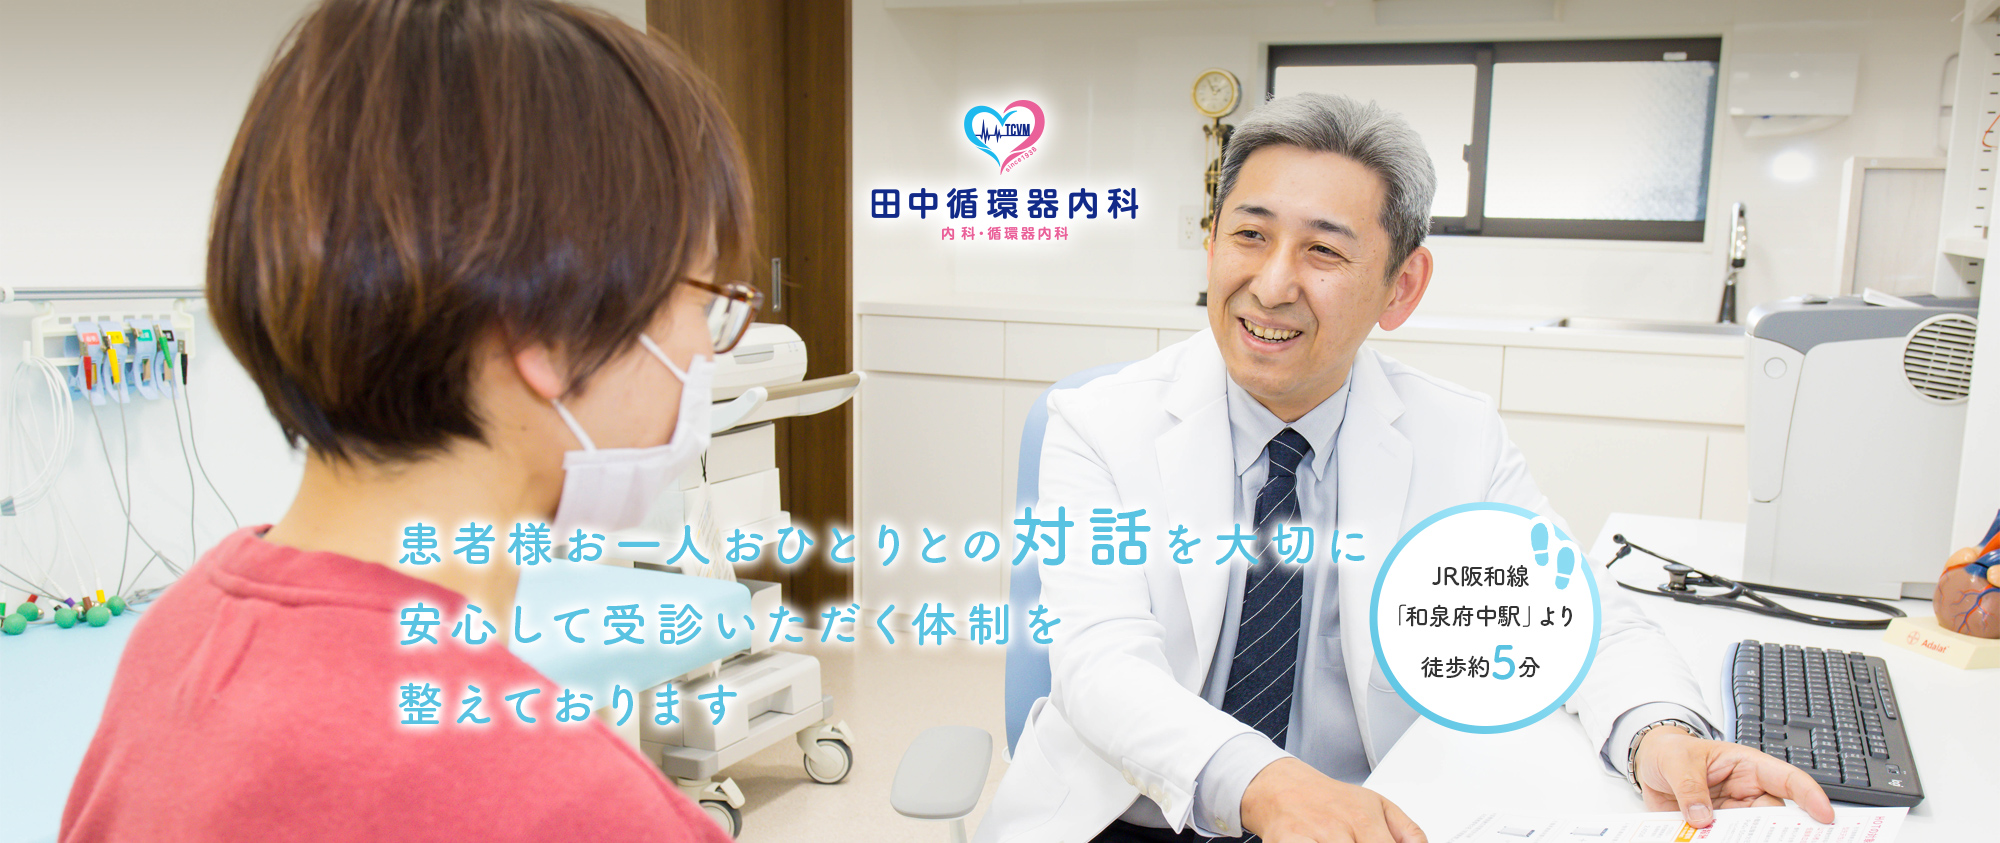 和泉市の田中循環器内科 内科・循環器内科 患者様お一人おひとりとの対話を大切に安心して受診いただく体制を整えております